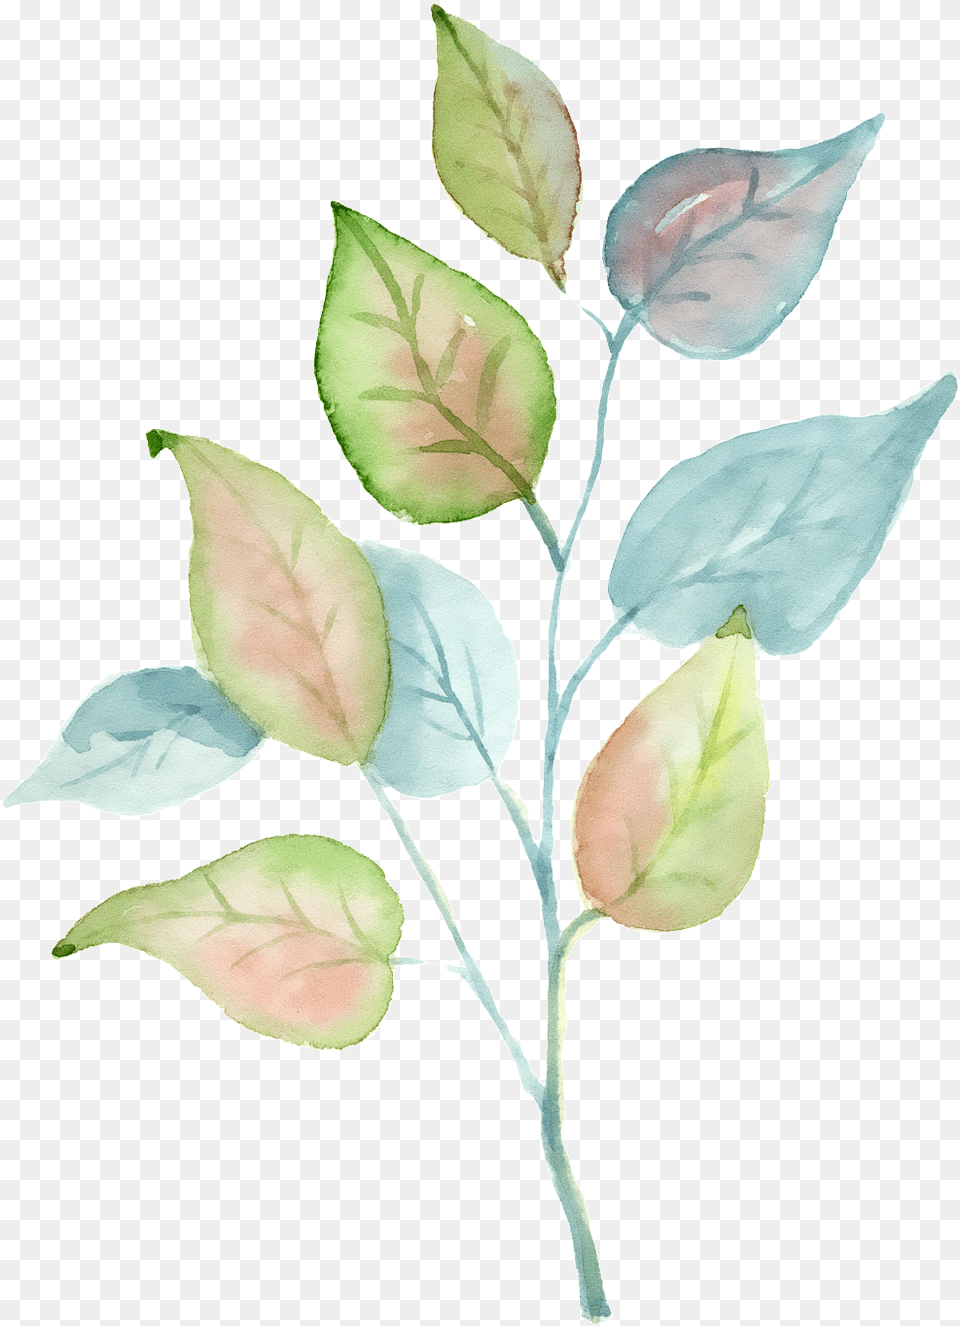 Tricolor Rose, Leaf, Plant, Flower, Petal Free Transparent Png